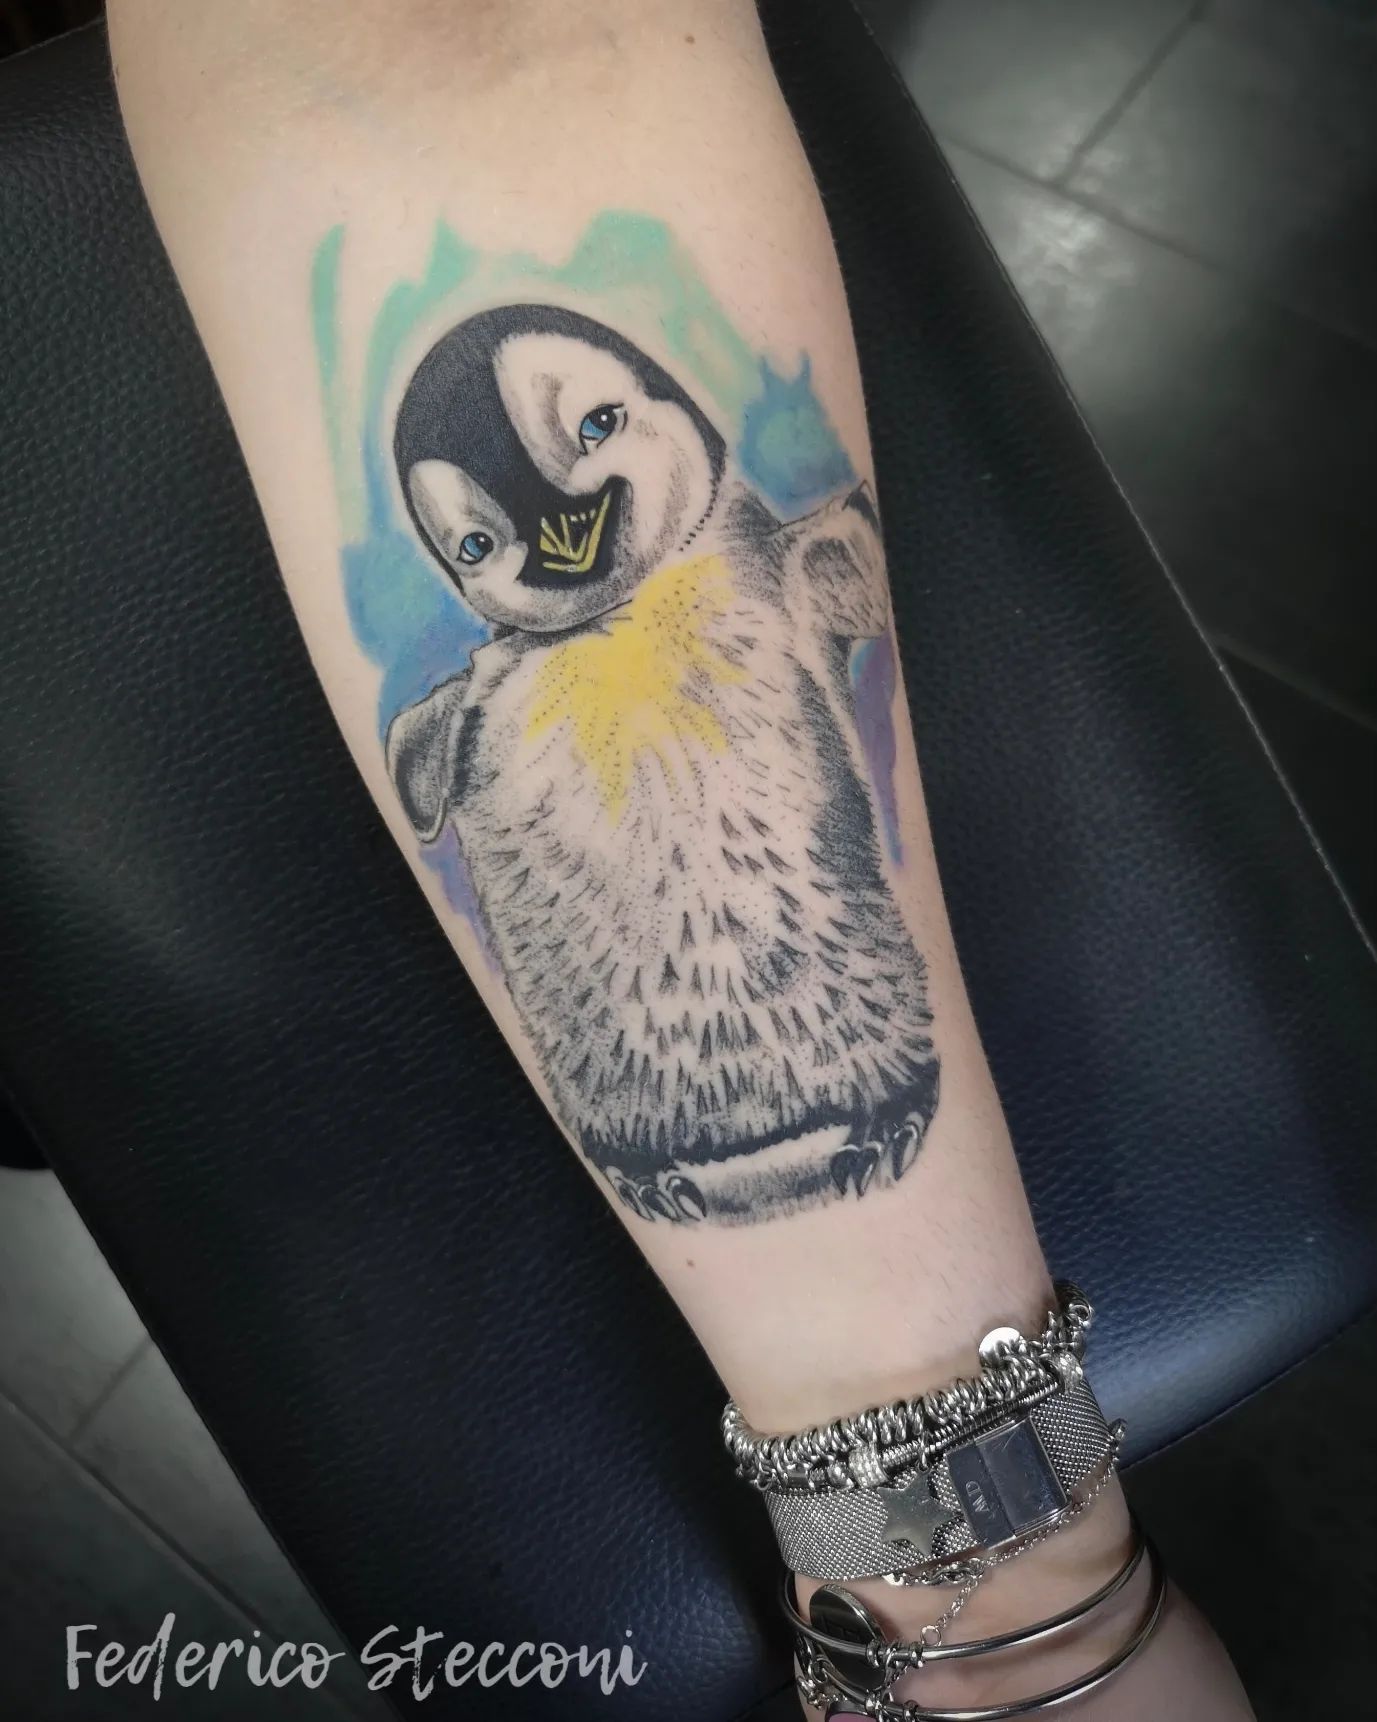 Tatuajes de pingüinos: 30 diseños que mezclan belleza y sencillez